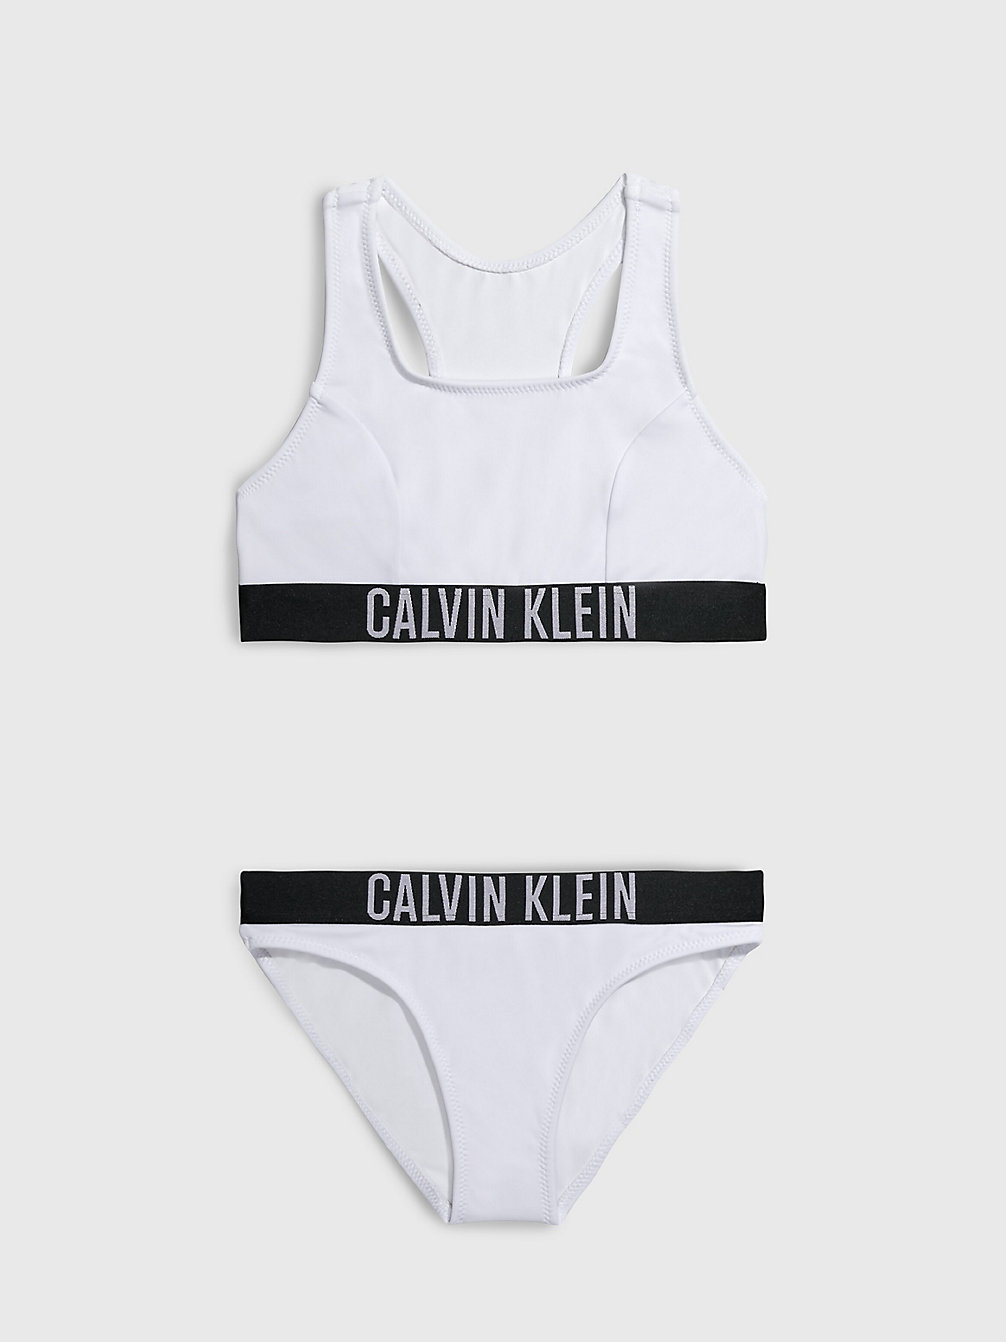 PVH CLASSIC WHITE > Bikini-Set Mit Bralette Für Mädchen - Intense Power > undefined Maedchen - Calvin Klein